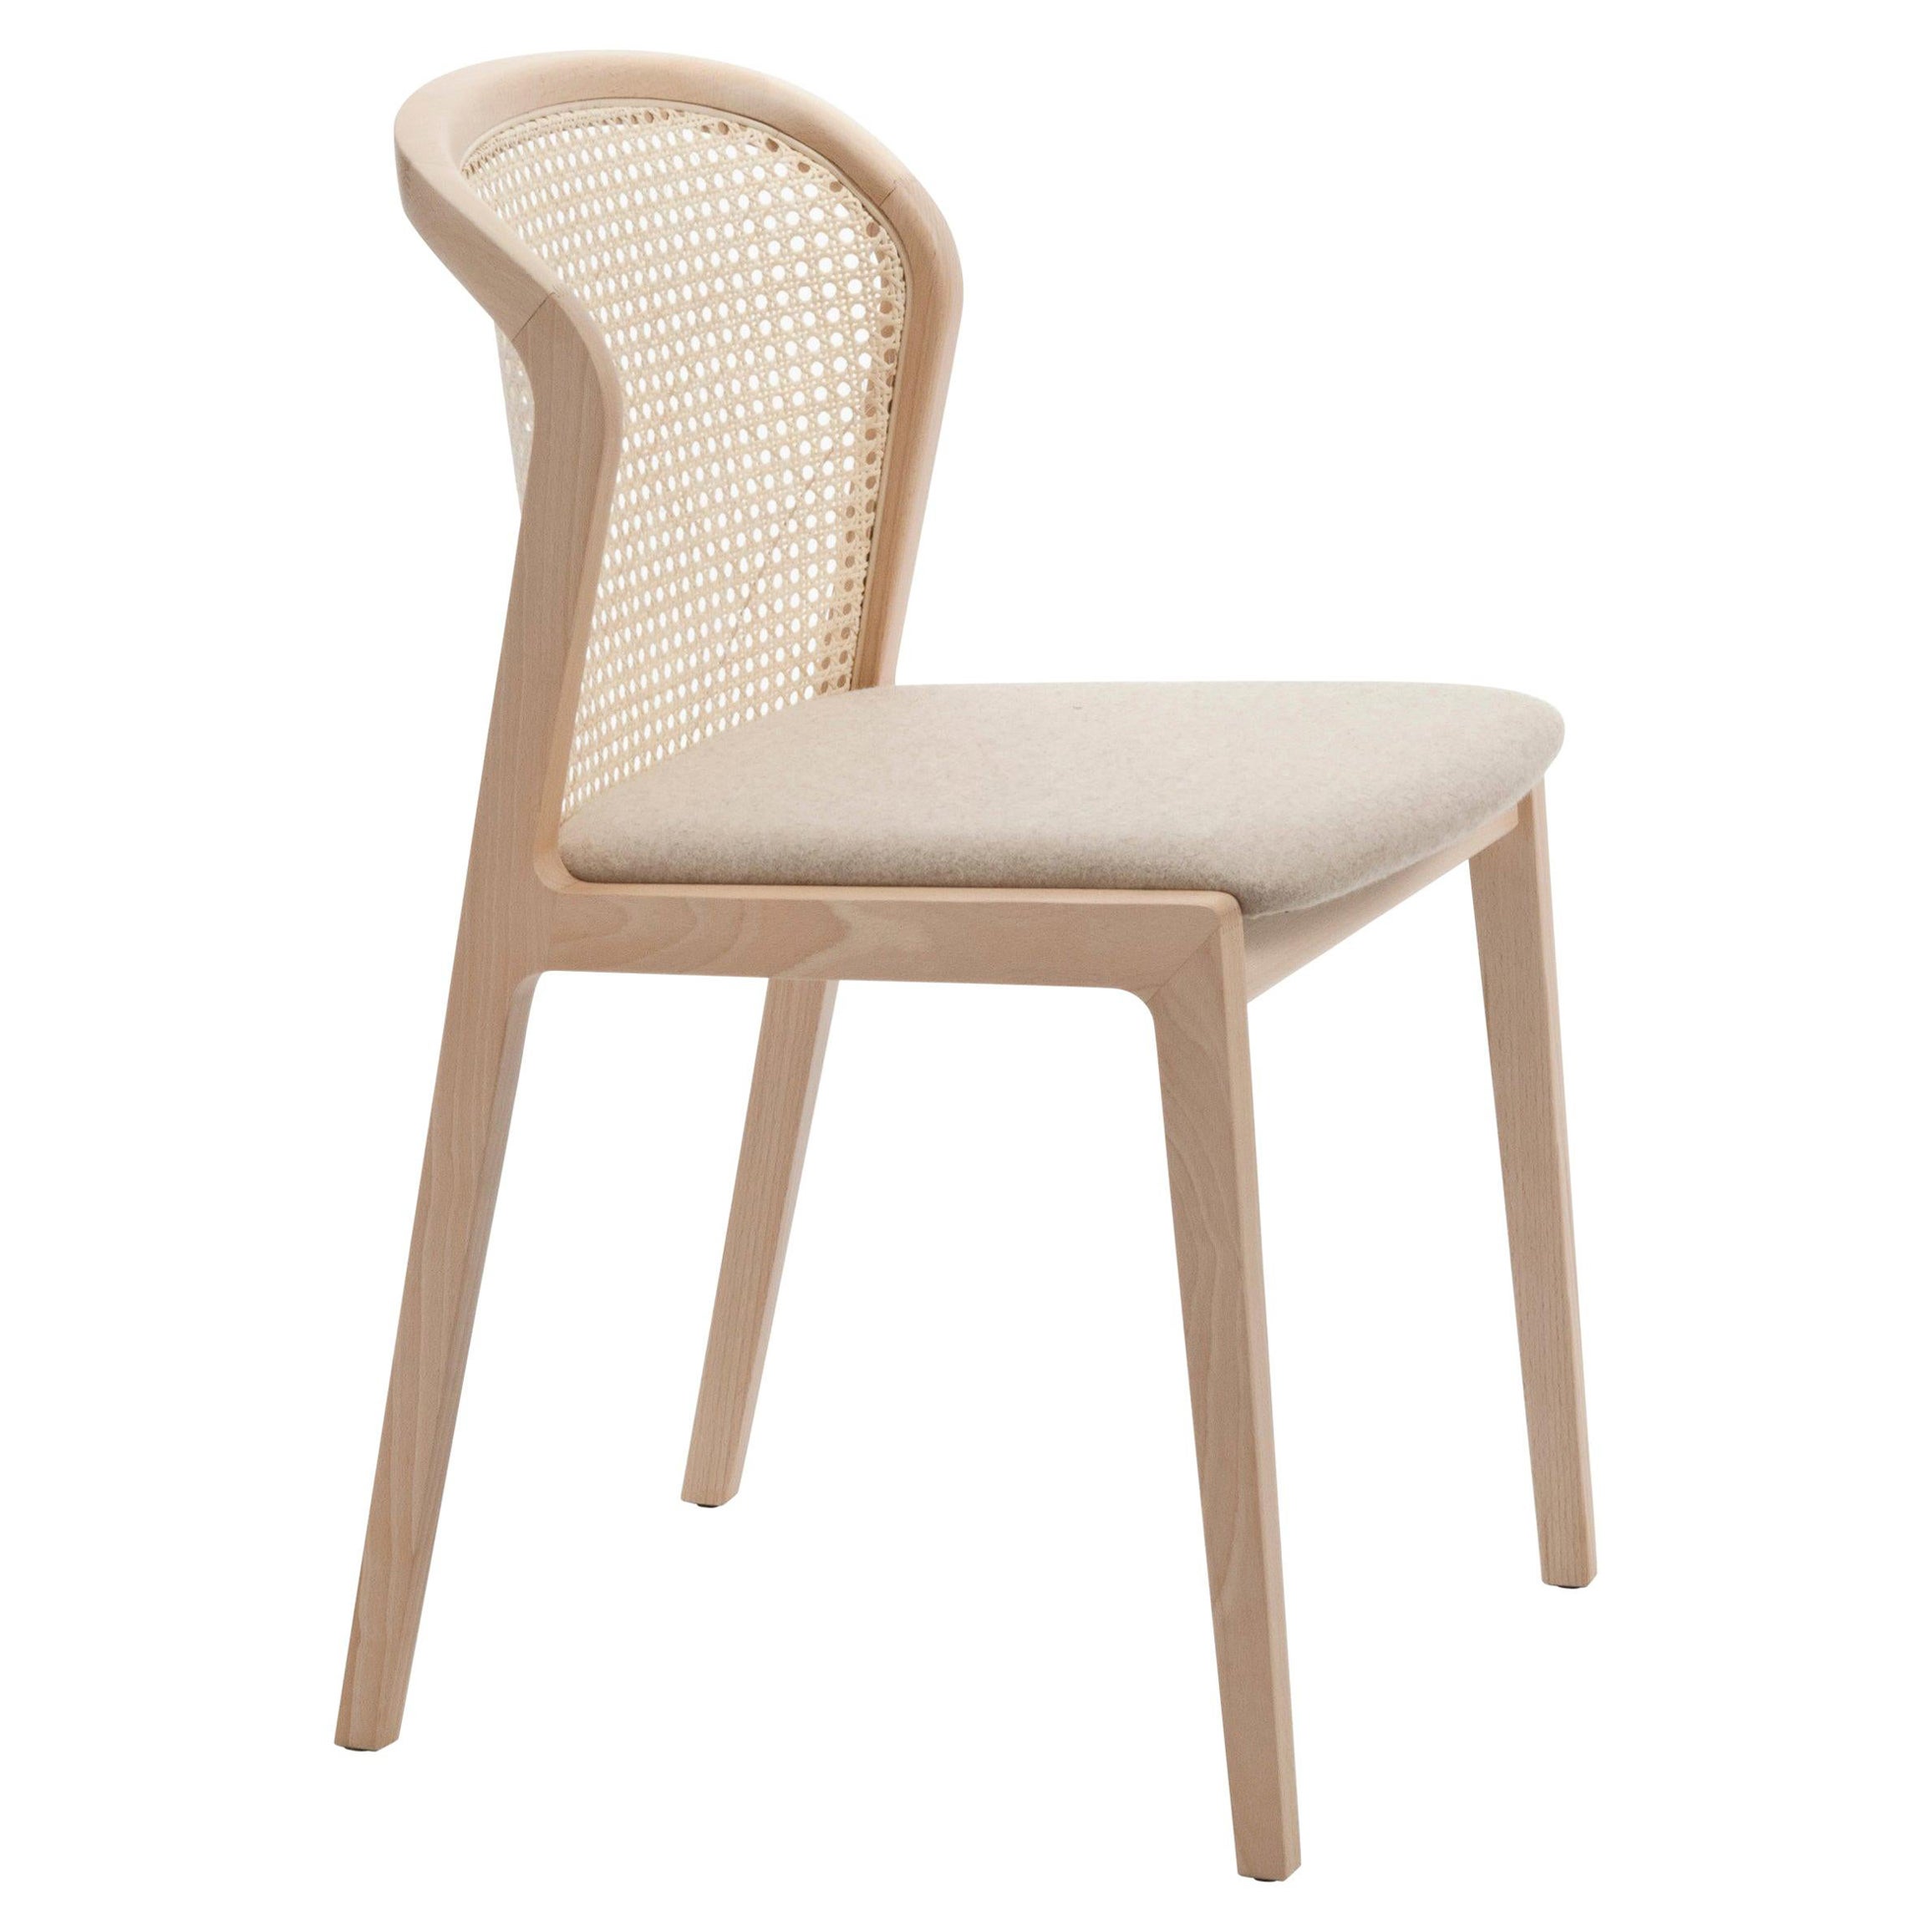 Ensemble de 6 chaises neuves. Vienna est une chaise extraordinairement confortable et élégante conçue par le designer français Emmanuel Gallina, qui aime à citer Brancusi en disant que 